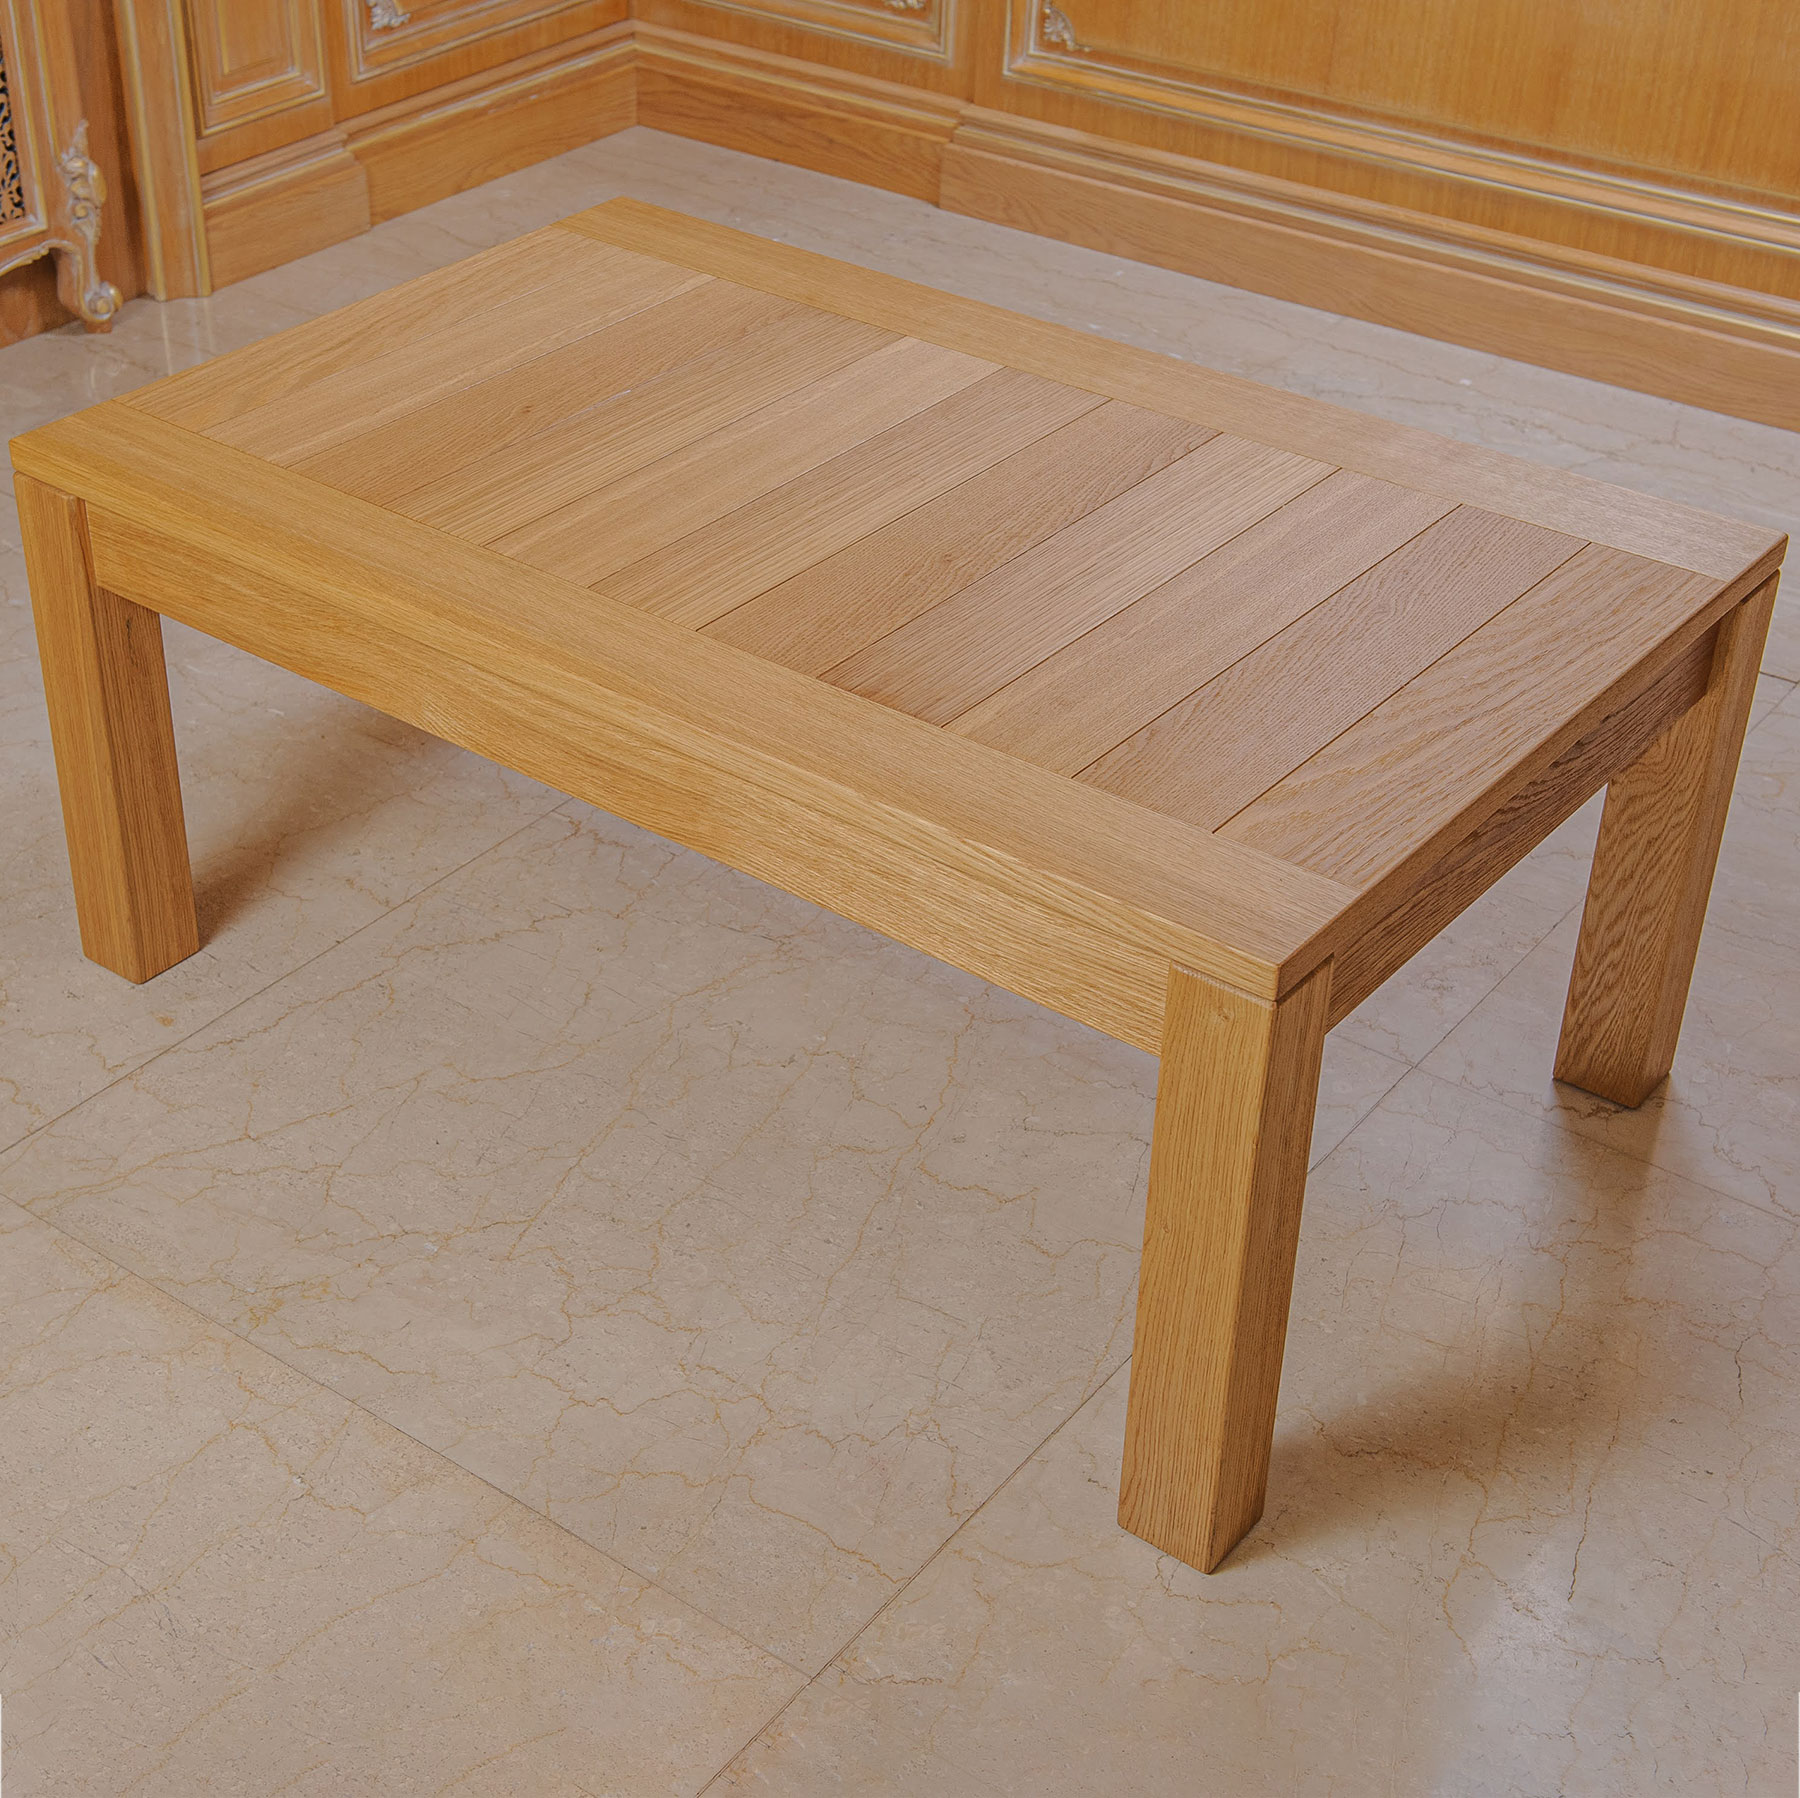 Stugna wooden table